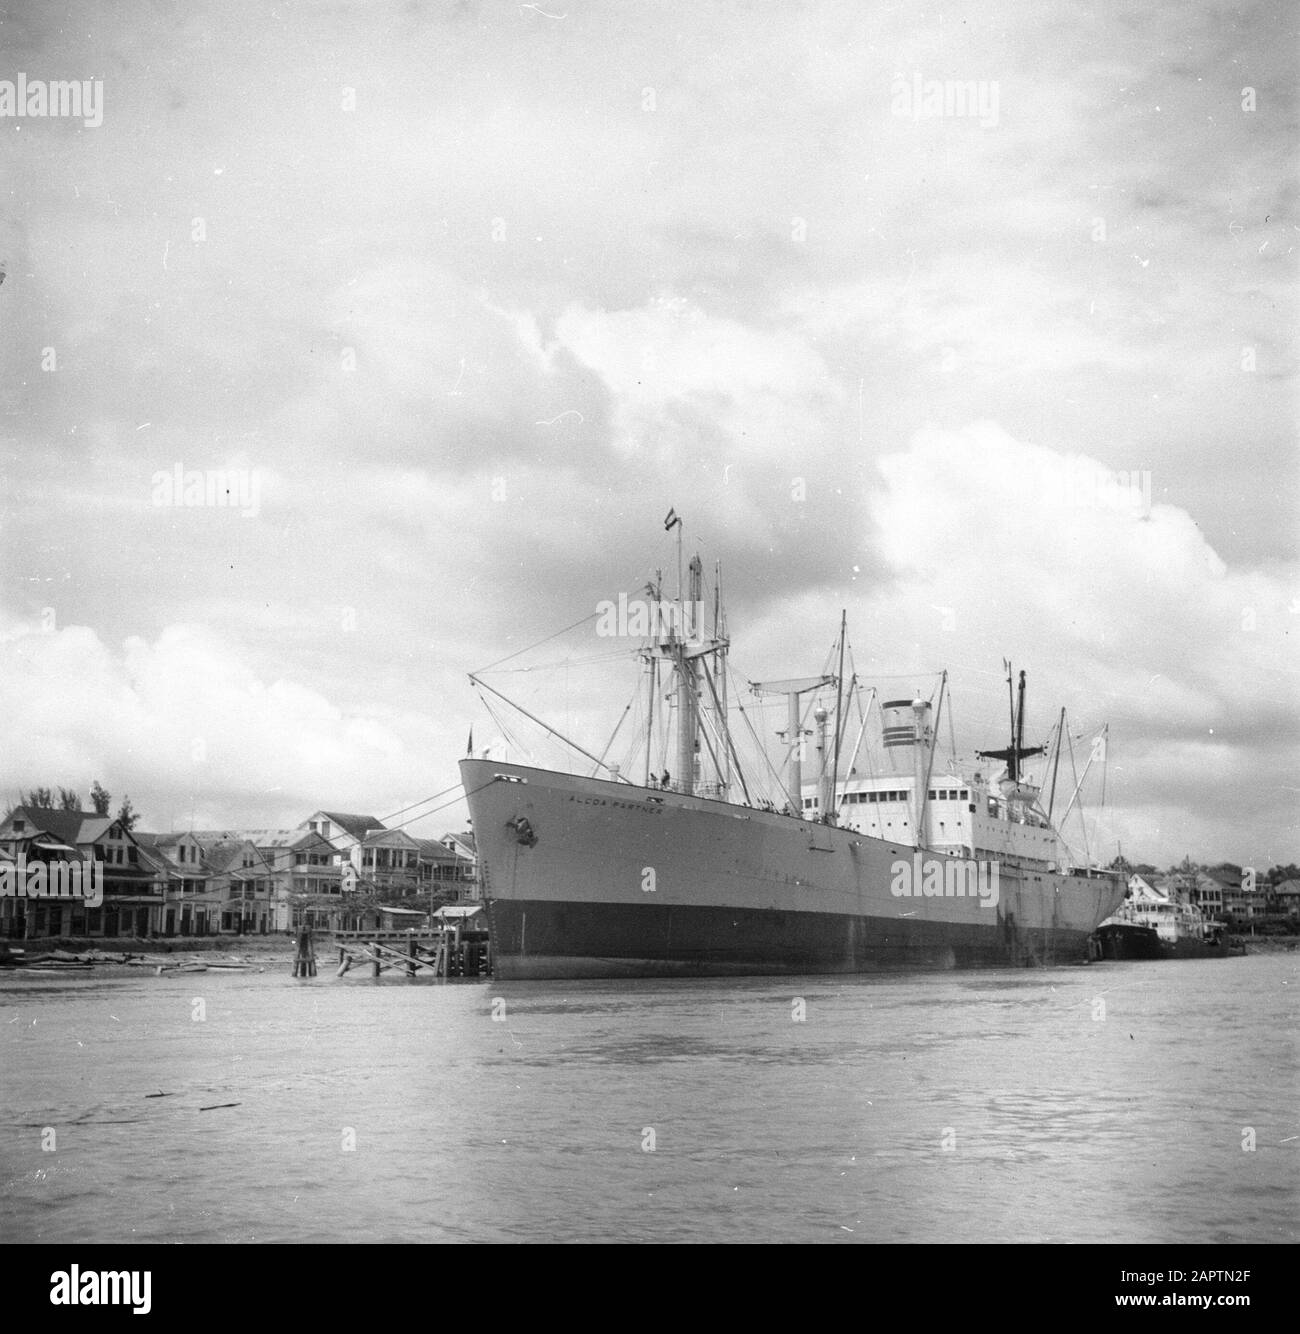 Viaggio in Suriname e Antille Olandesi la nave da carico Alcoa nel porto di Paramaribo Data: 1947 Località: Paramaribo, Suriname Parole Chiave: Porti, fiumi, navi Foto Stock